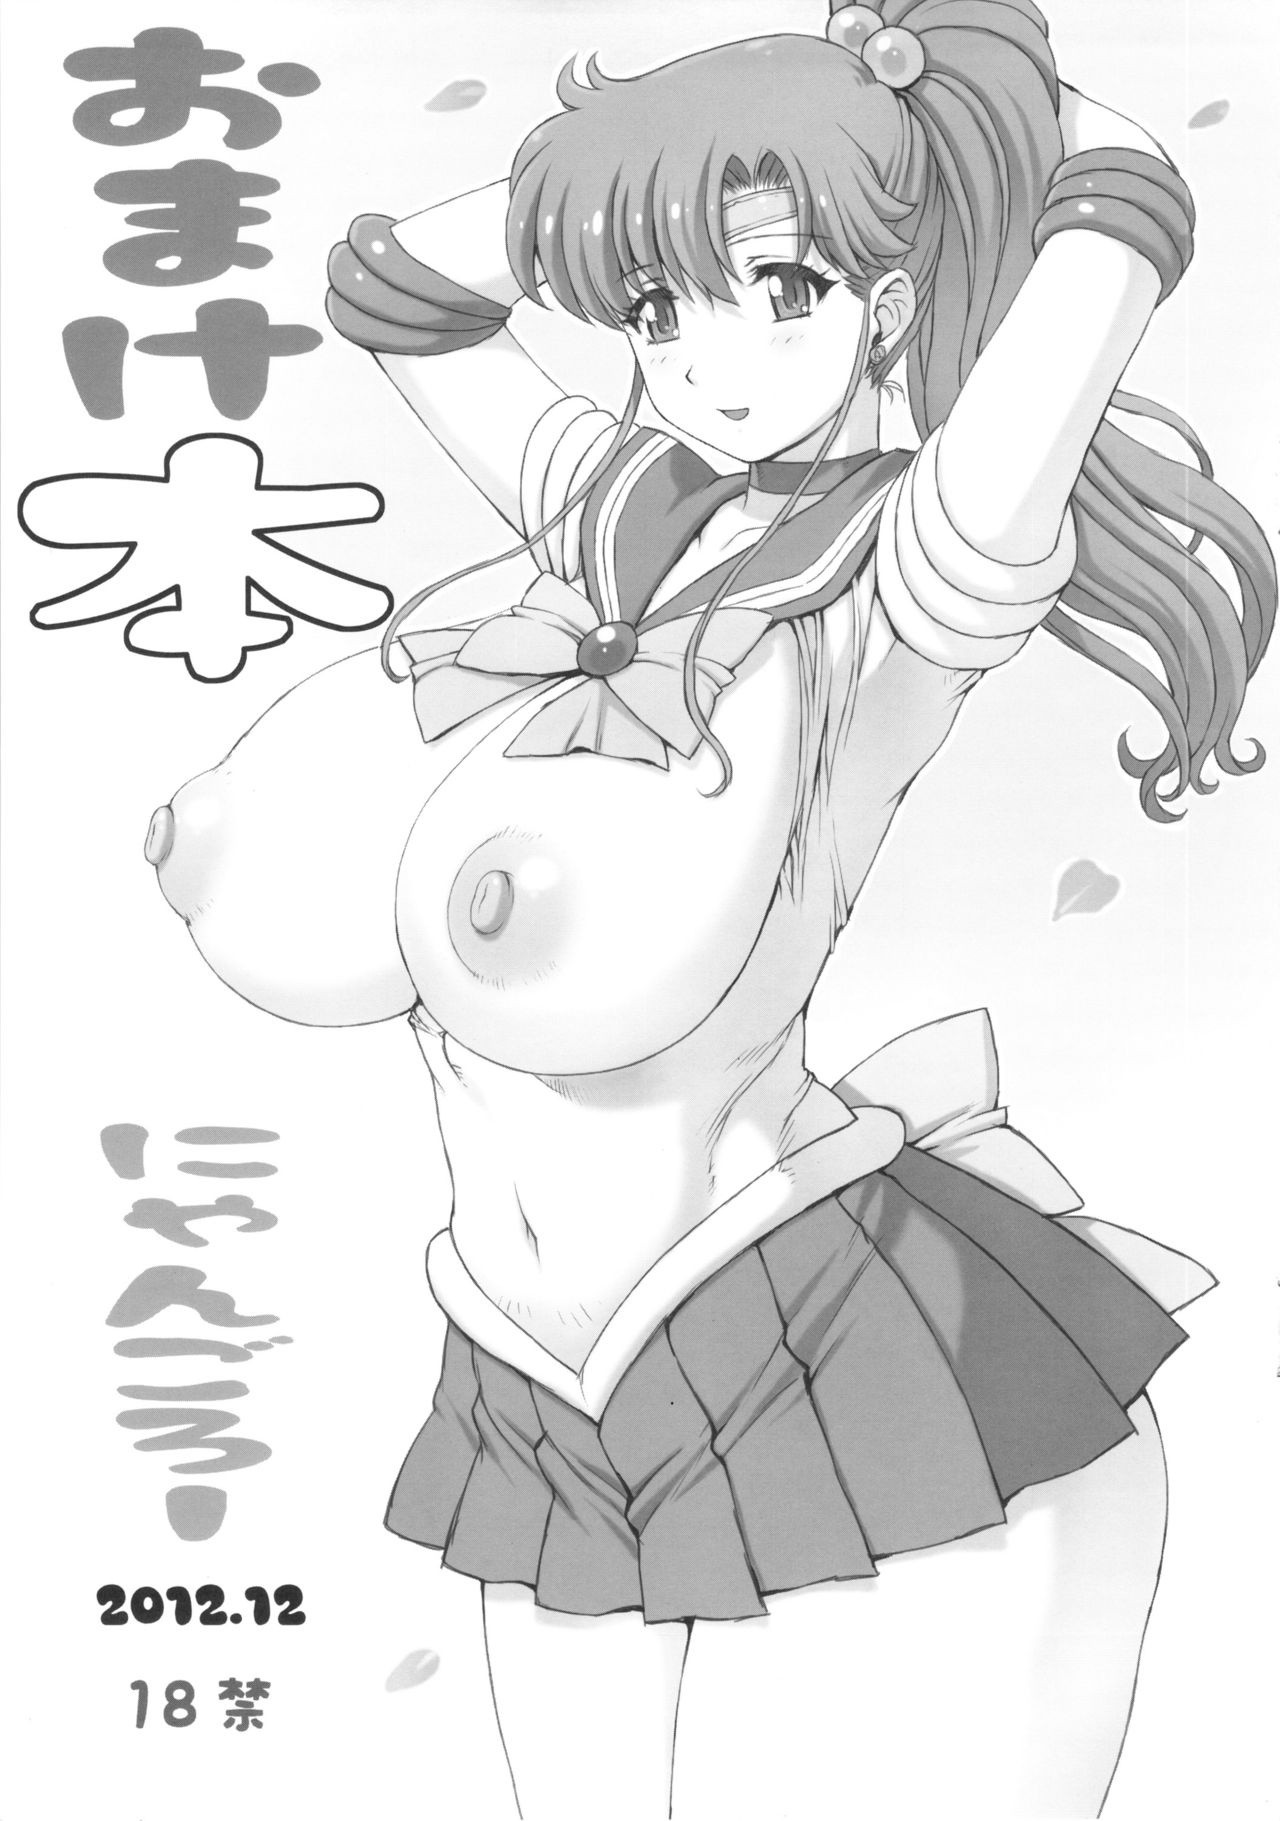 Inka + Omake Bon + Postcard hentai manga picture 25